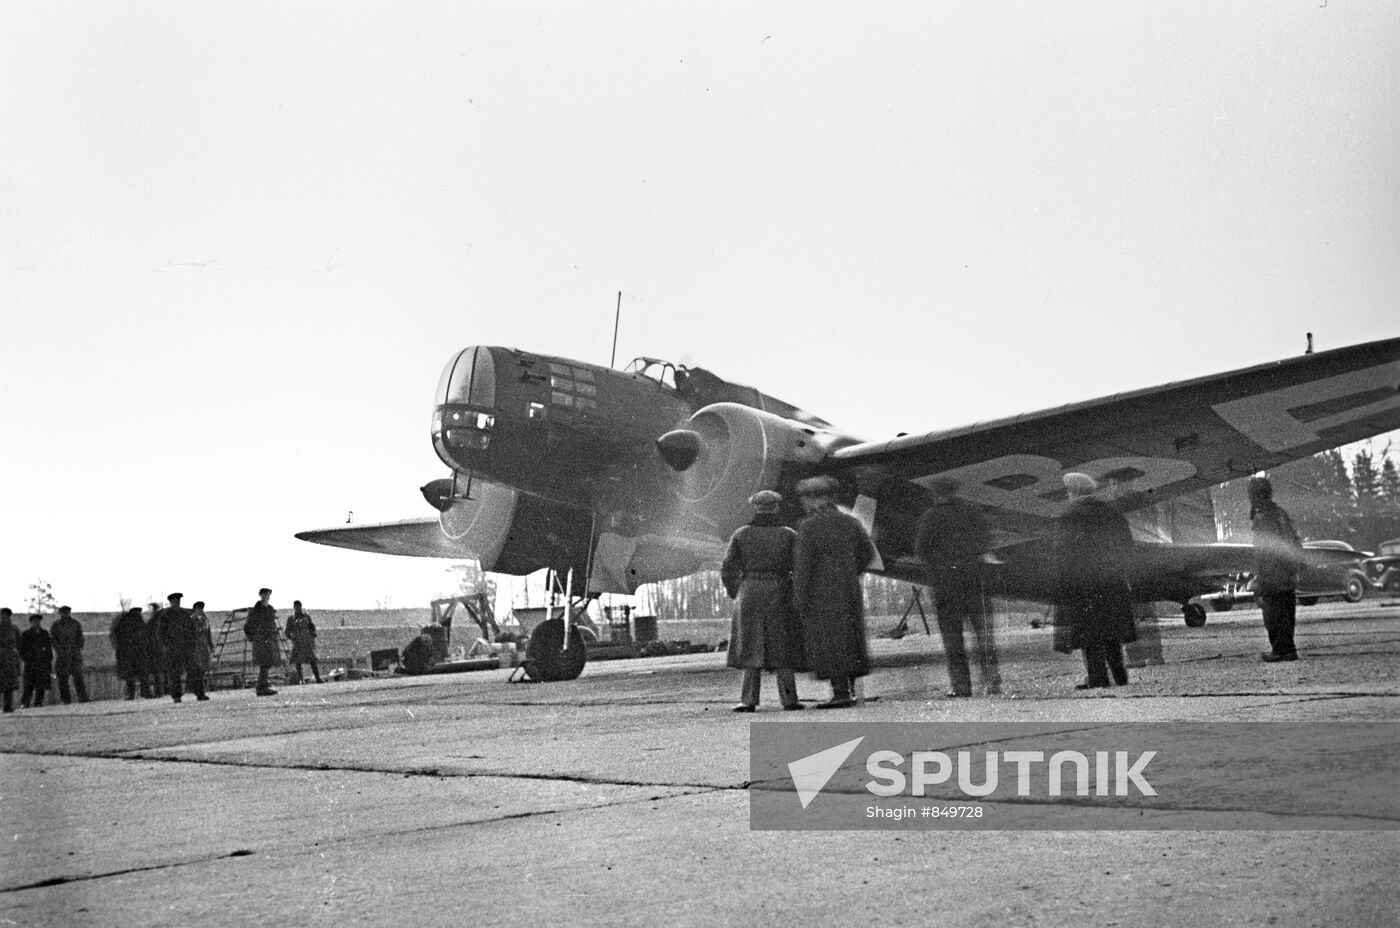 TsKB-30 aircraft